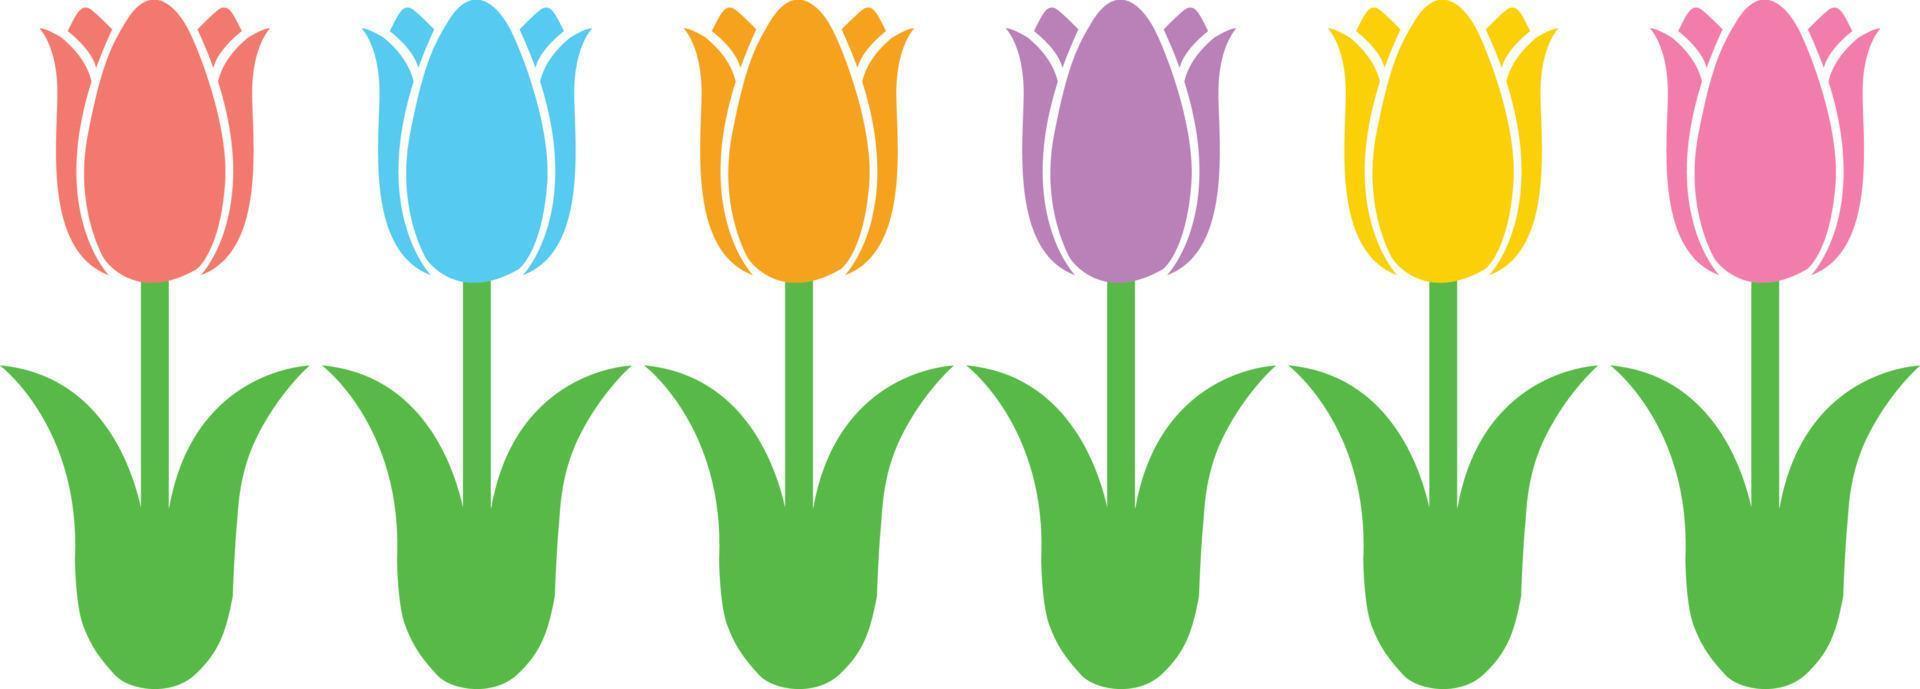 Tulips Flower 1 vector